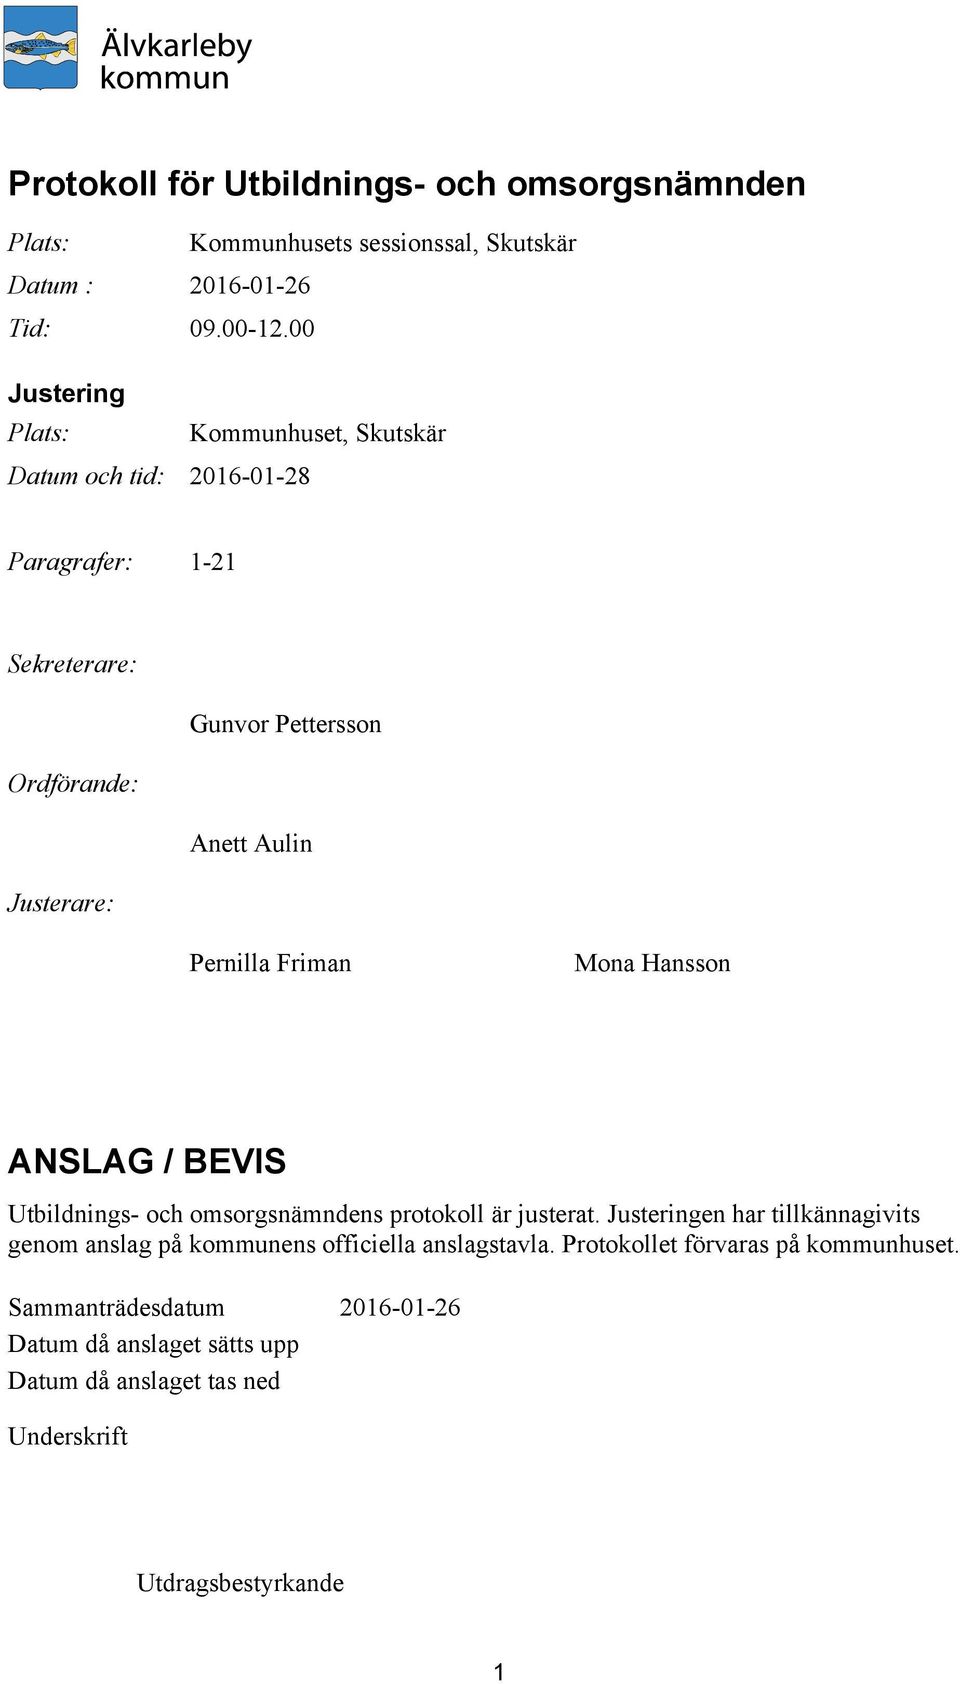 Justerare: Pernilla Friman Mona Hansson ANSLAG / BEVIS Utbildnings- och omsorgsnämndens protokoll är justerat.